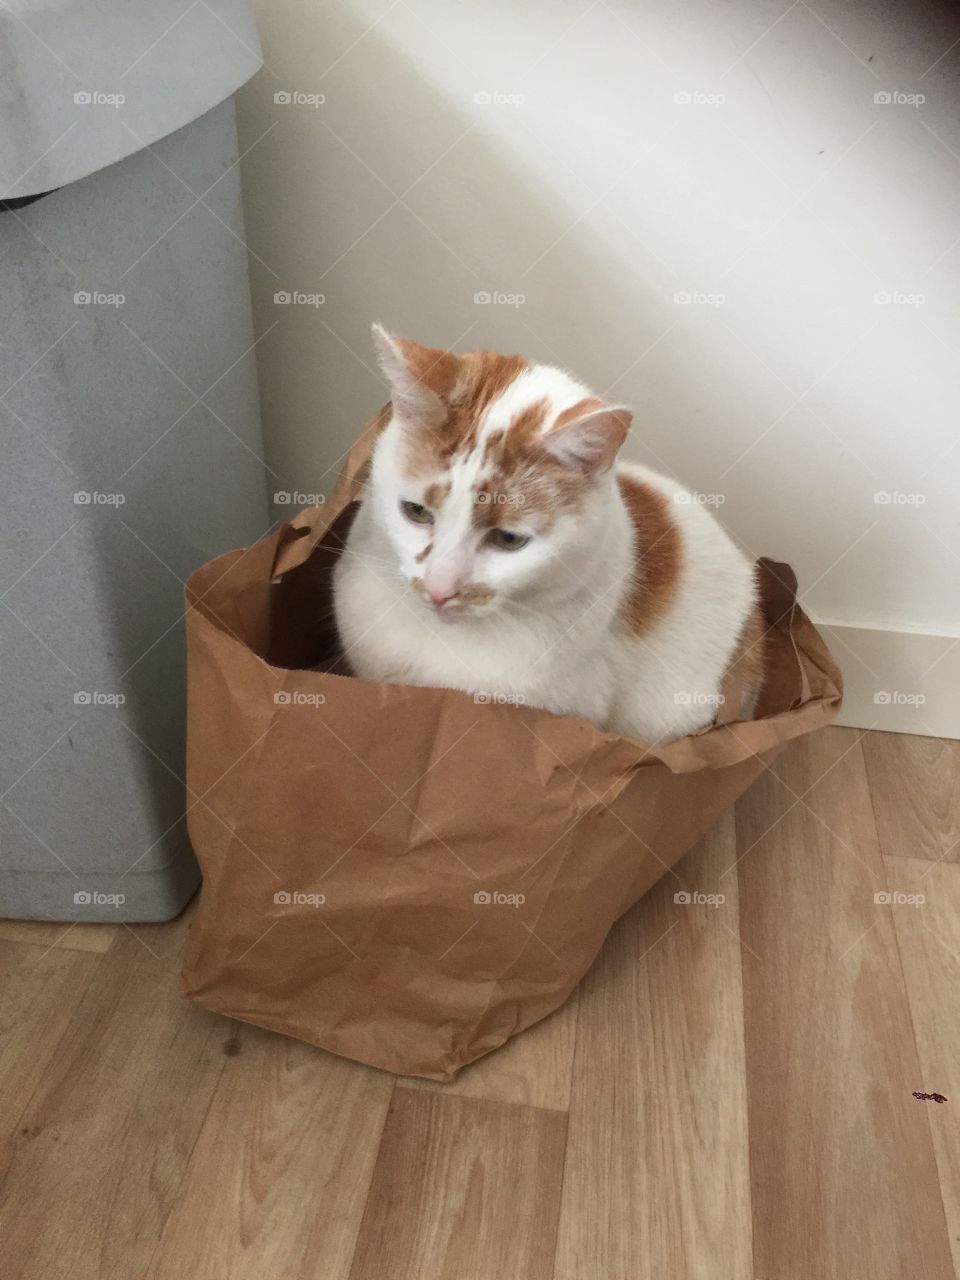 Cat in a paper bag